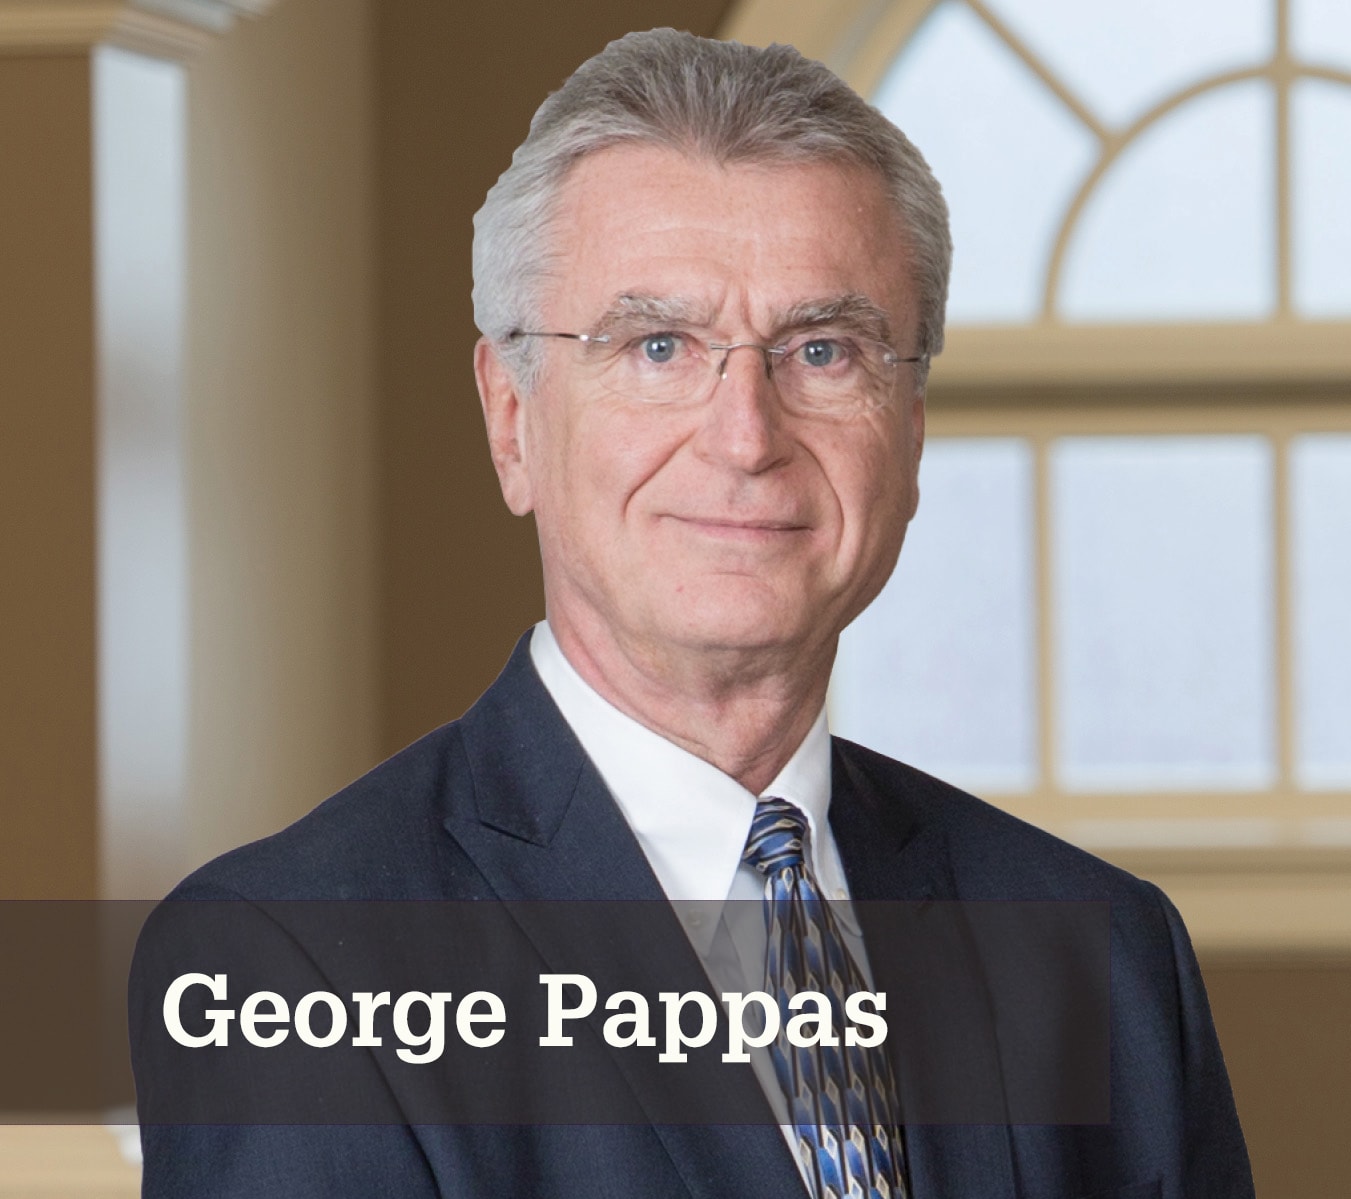 George Pappas